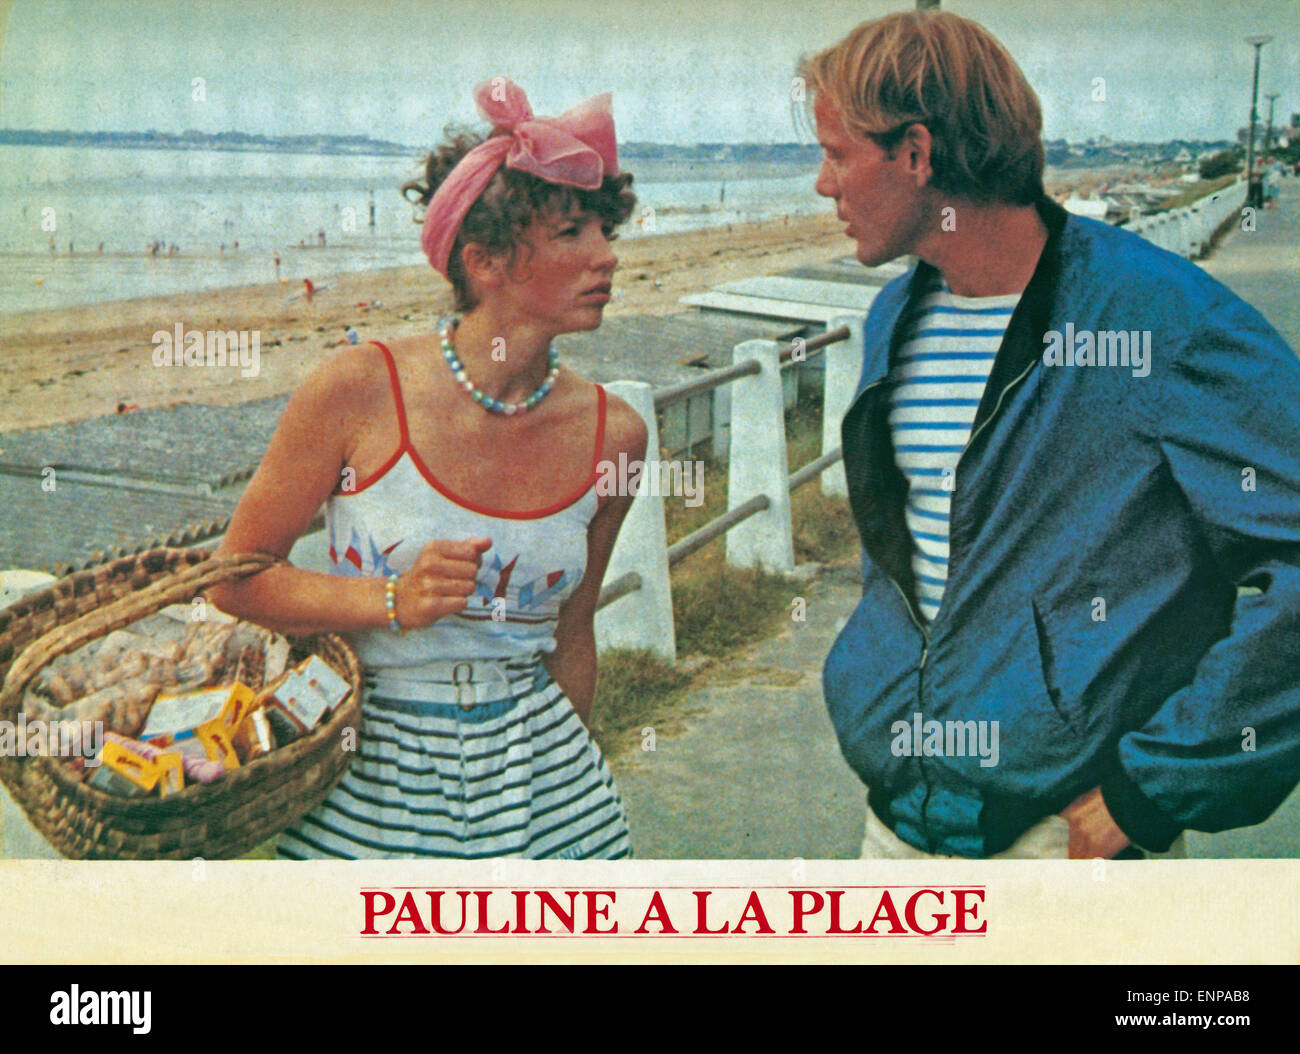 Pauline à la plage 1983 hi-res stock photography and images